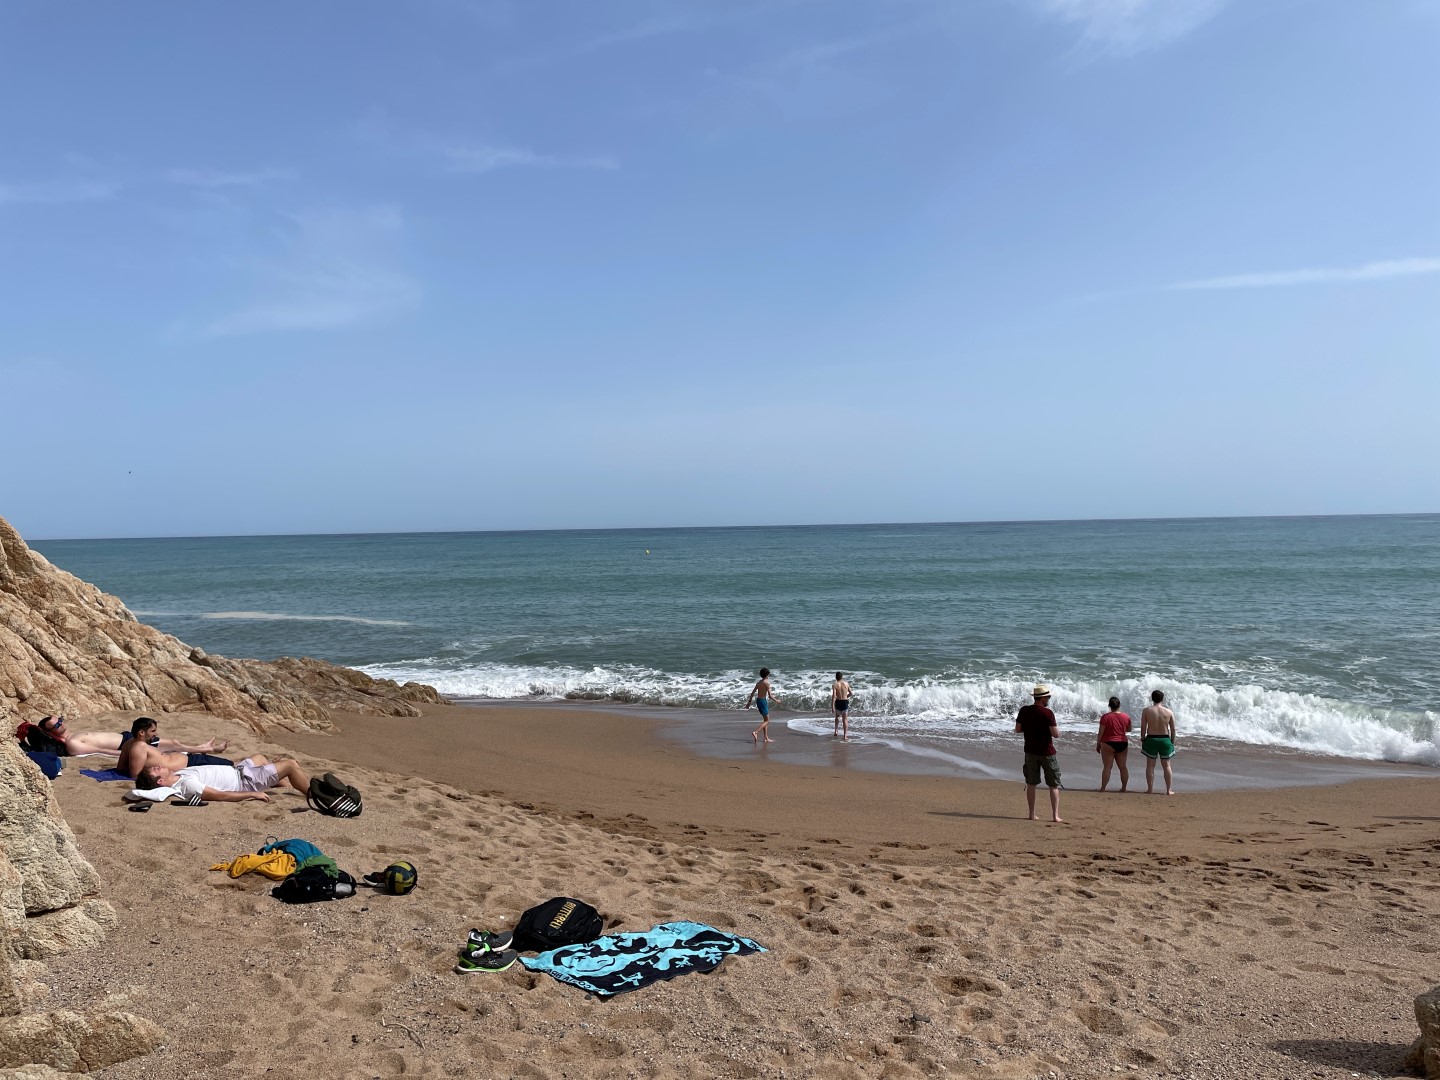 Strand-Besuch-in-einer-Bucht-in-Calella